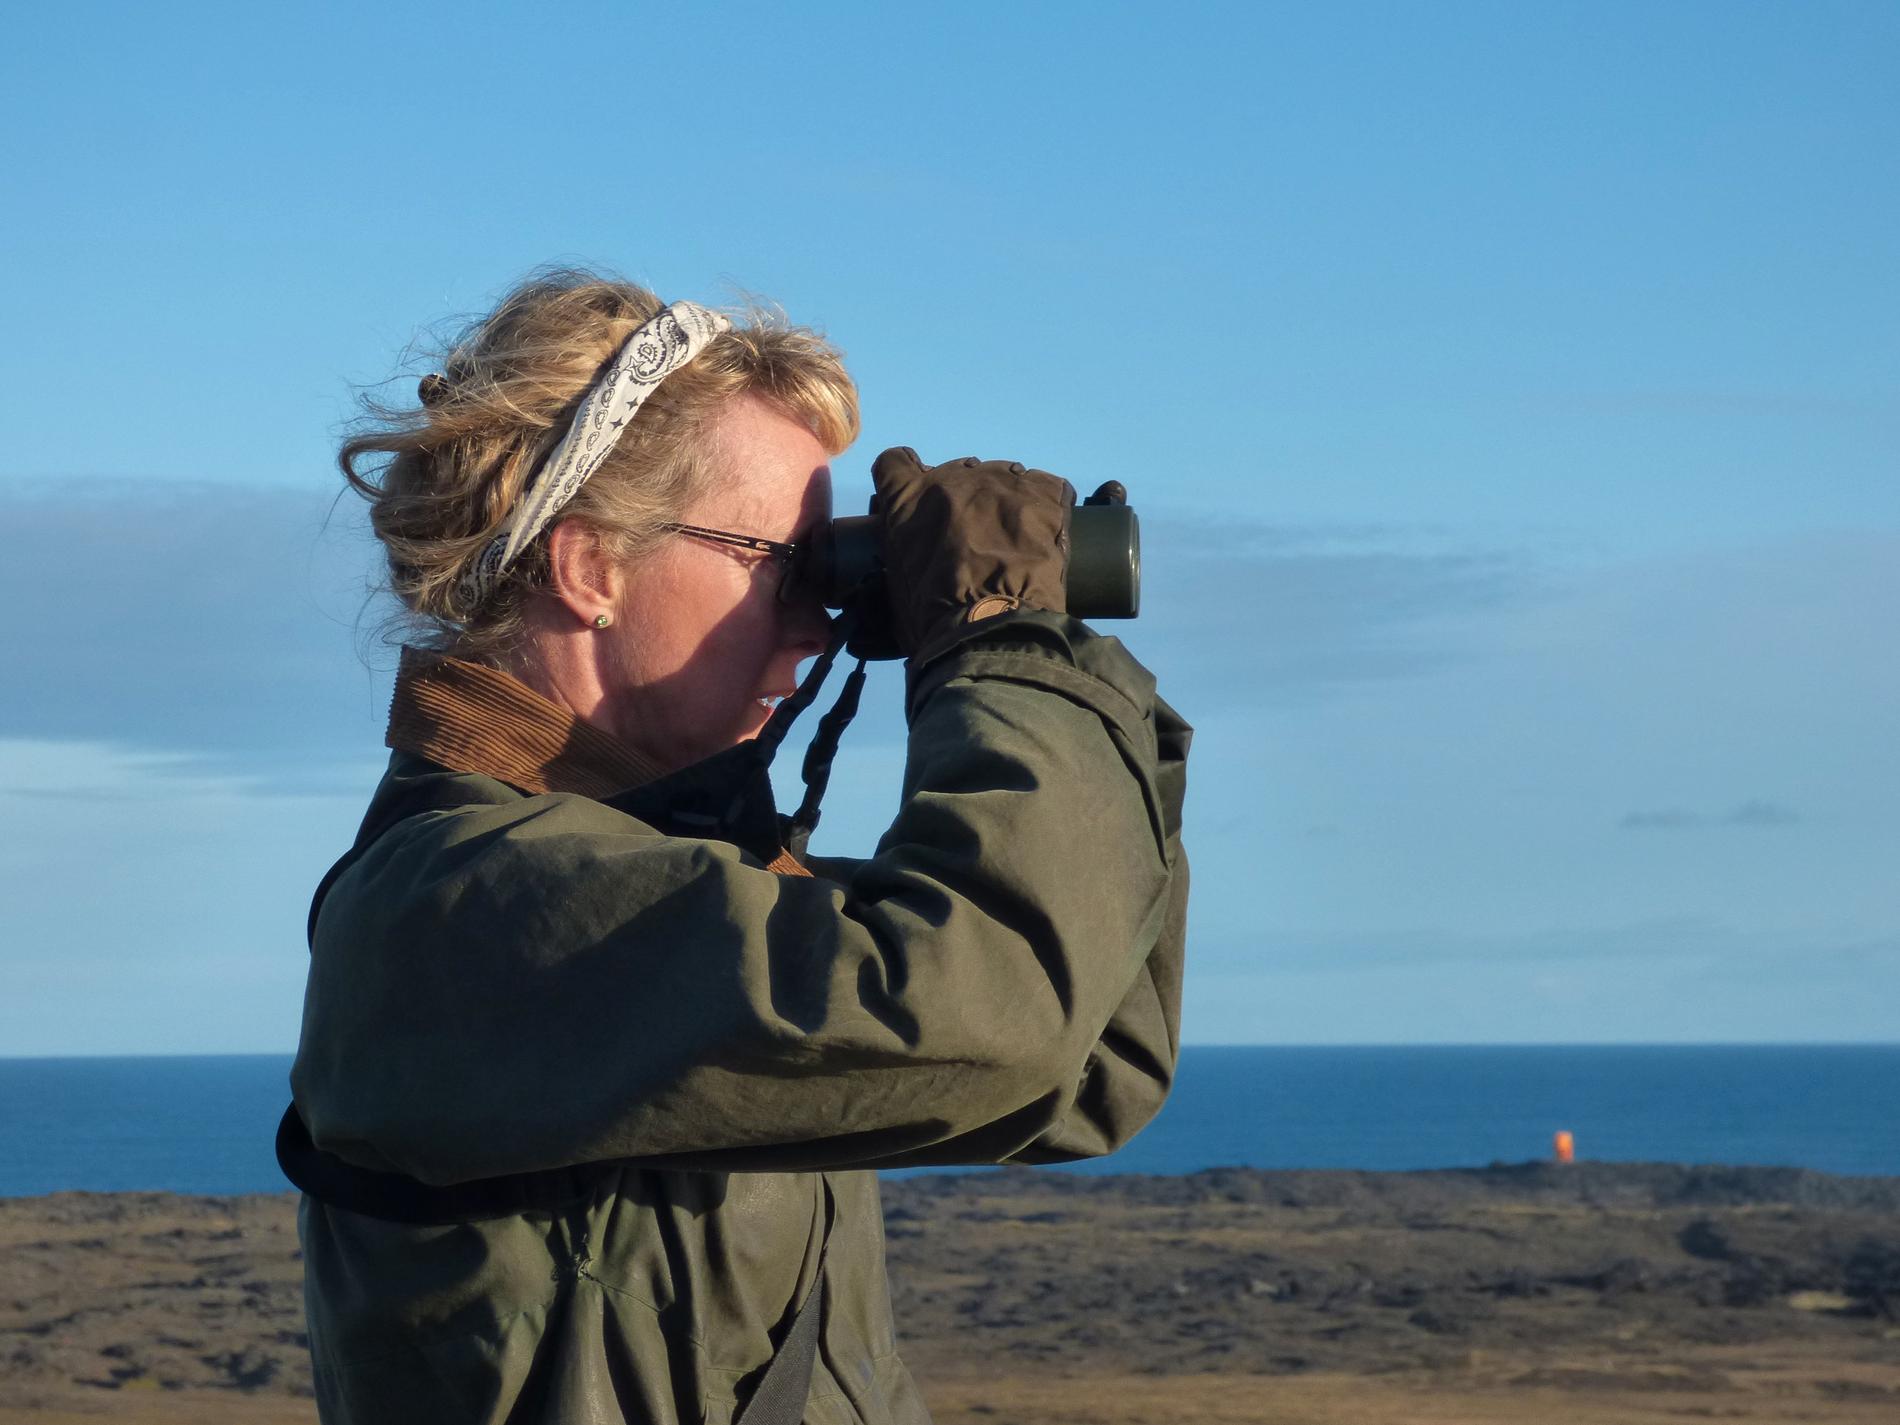 Lotta Berg valdes nyligen till ordförande för Sveriges ornitologiska förening – Birdlife Sverige.